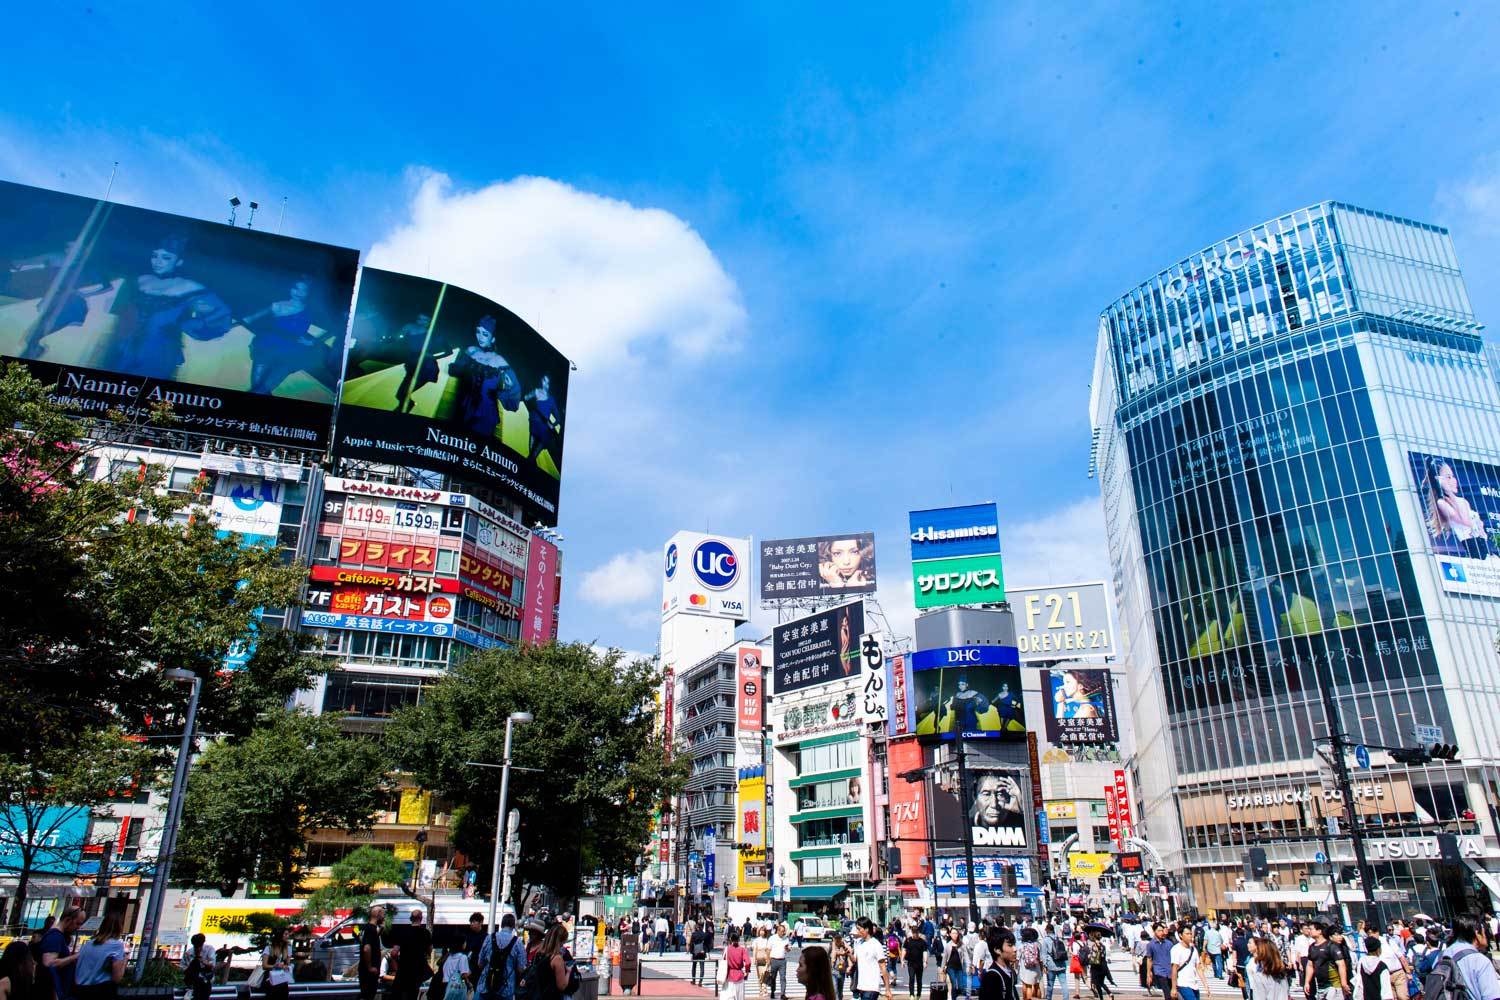 安室奈美恵 引退から1年もusenリクエストチャートで Hero が返り咲き1位獲得 渋谷をジャケット写真でジャック中 Spice エンタメ特化型情報メディア スパイス